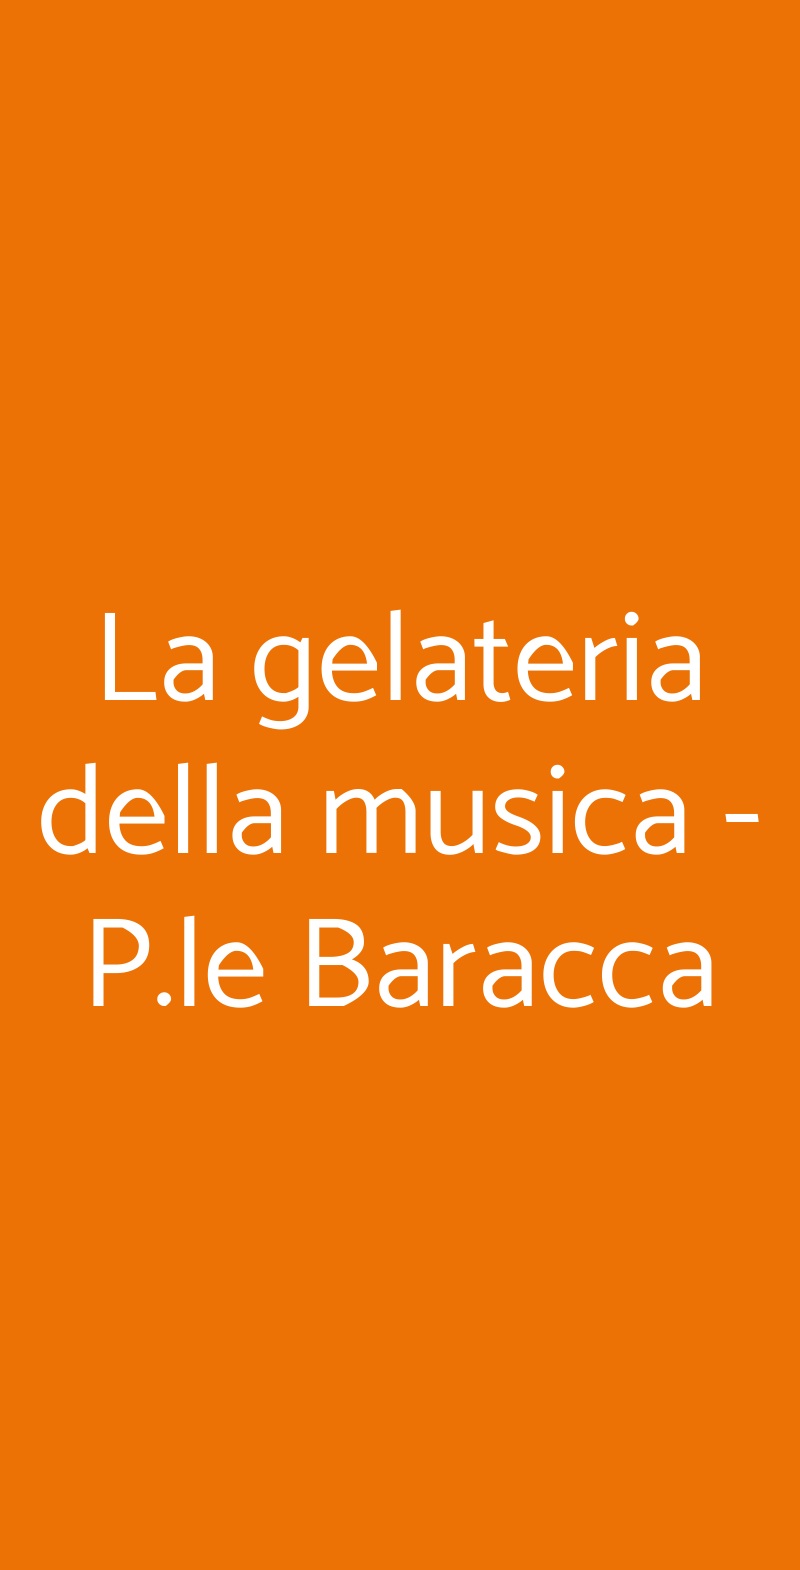 La gelateria della musica - P.le Baracca Milano menù 1 pagina